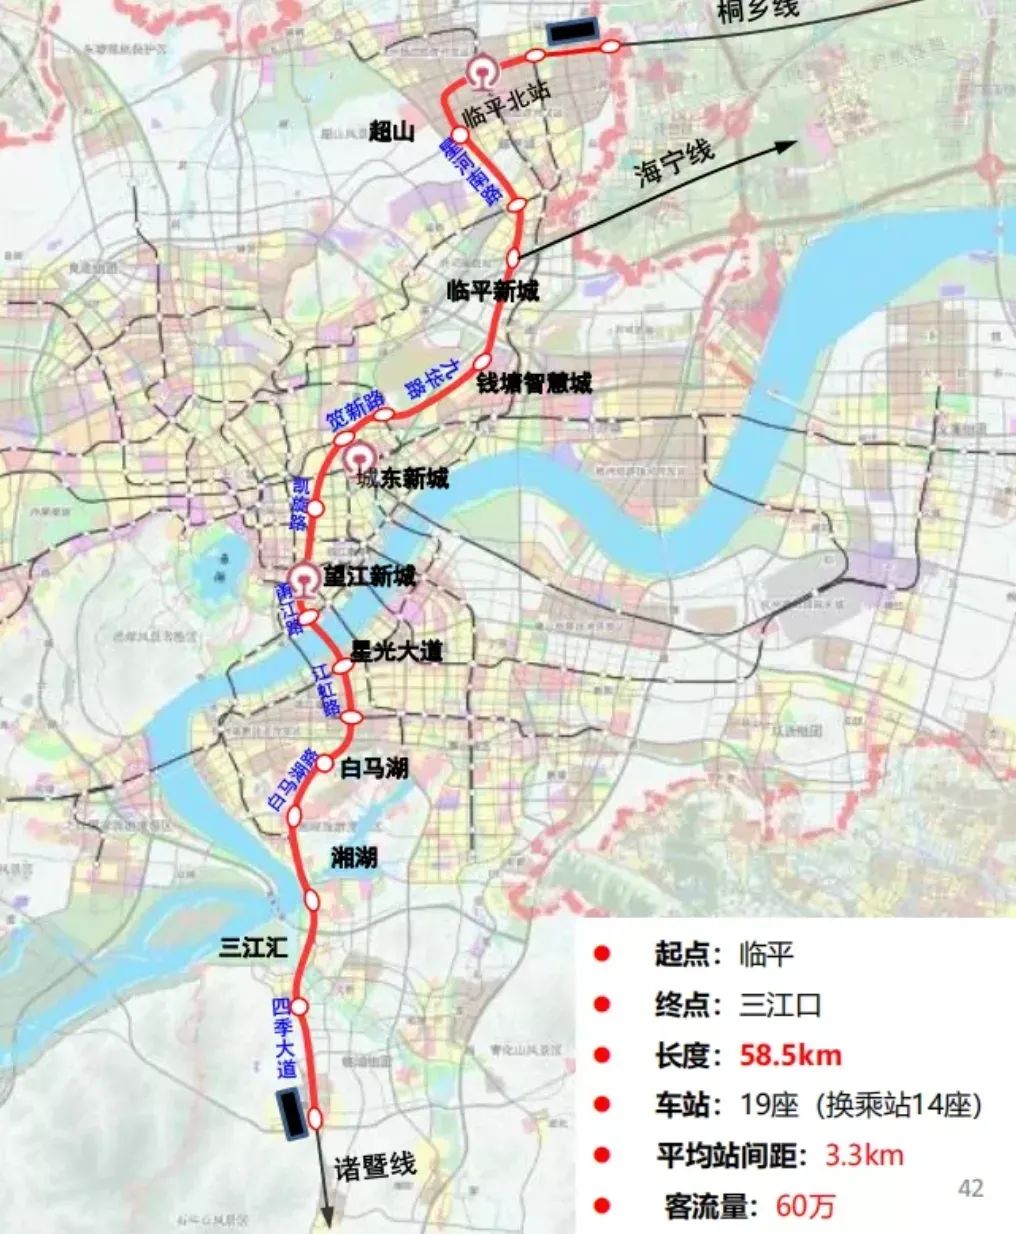 线路起于萧山义桥站,终至世纪大道站,主要沿时代大道,天马路,江晖路